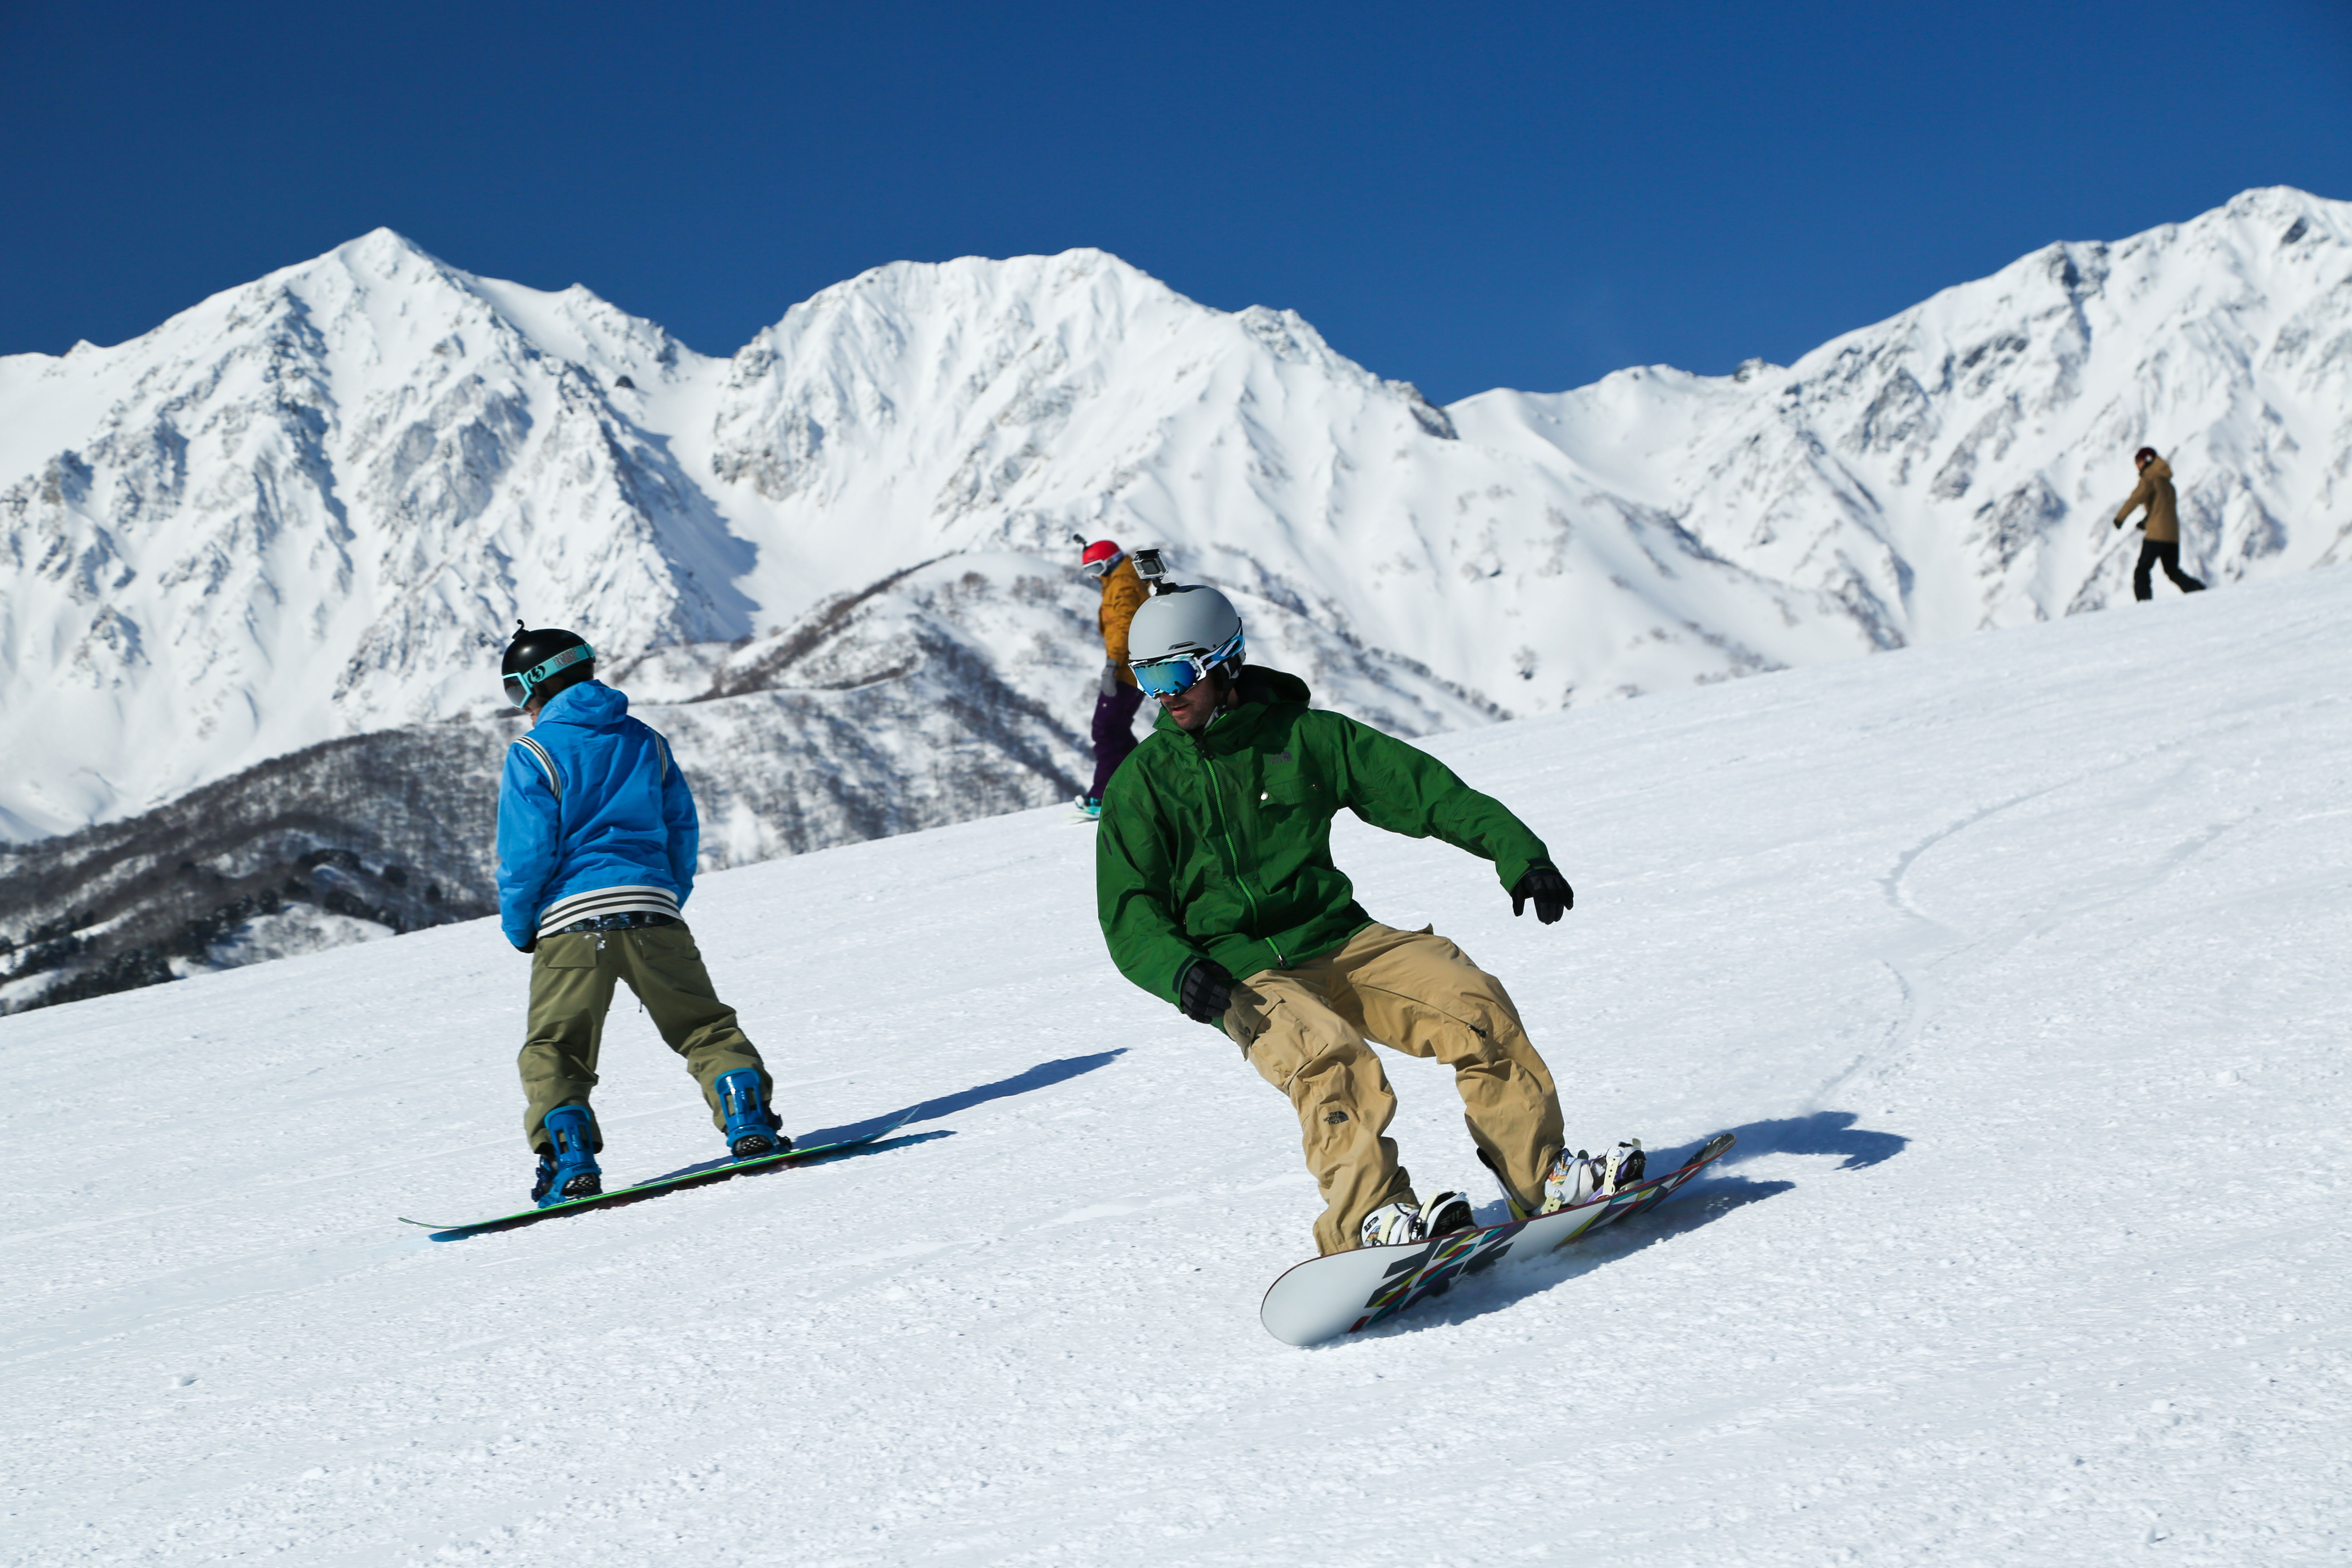 白马岩岳滑雪场是可以眺望北阿尔卑斯山脉壮丽景色的第一滑雪场。